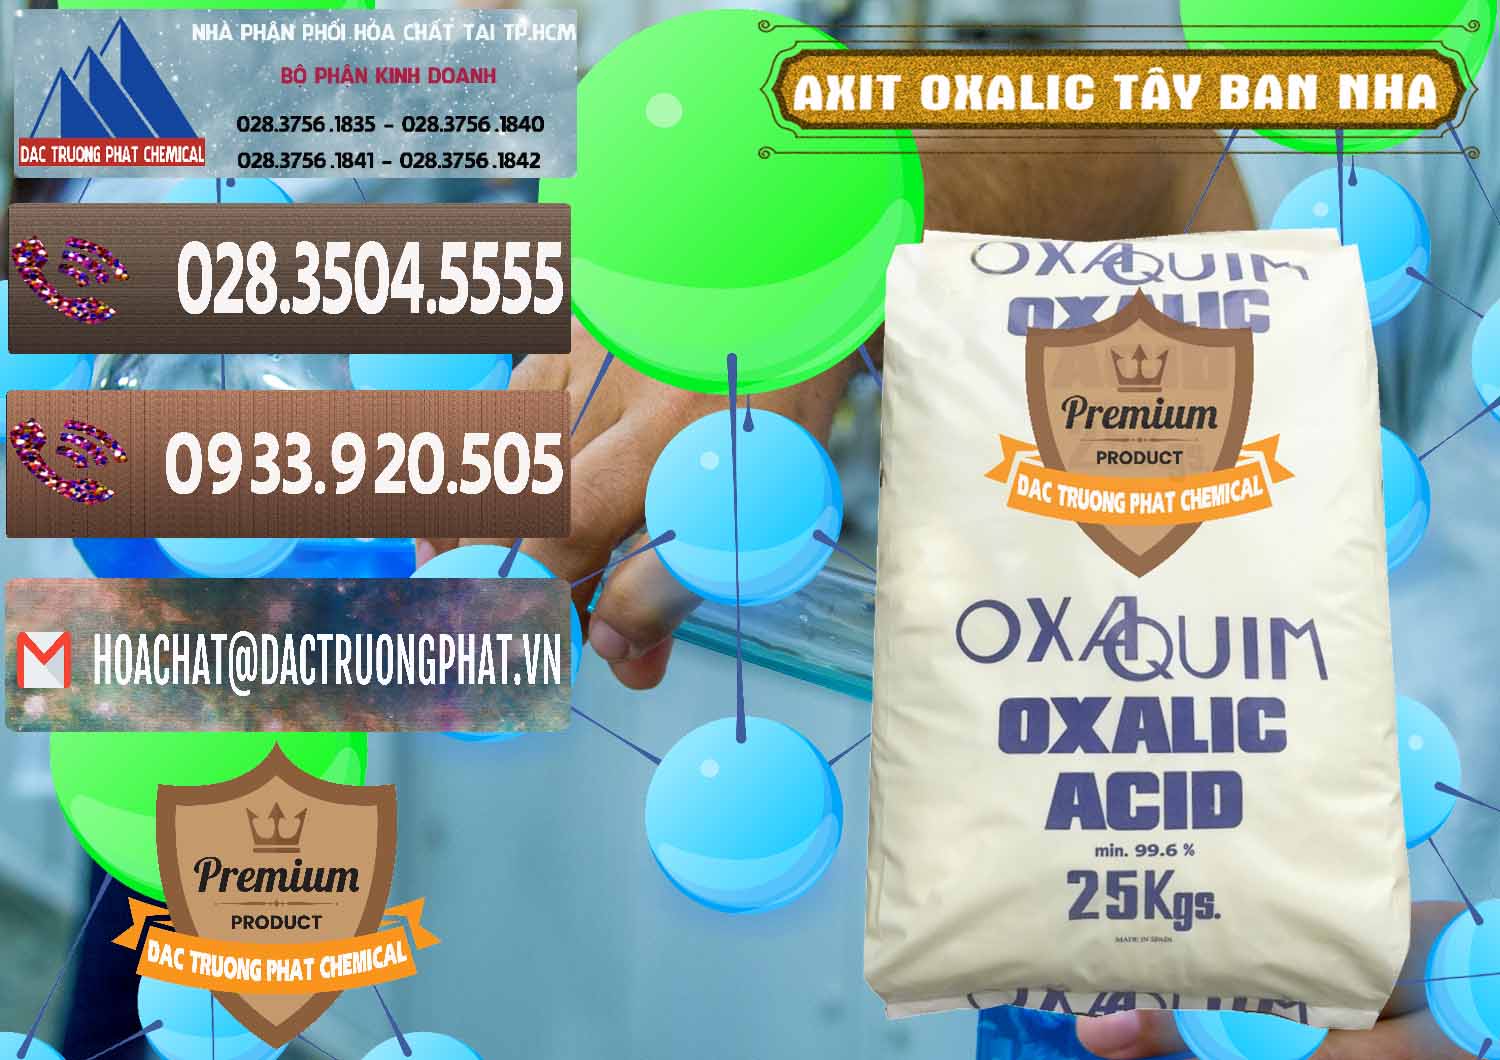 Nơi chuyên cung ứng ( bán ) Acid Oxalic – Axit Oxalic 99.6% Tây Ban Nha Spain - 0269 - Đơn vị bán và phân phối hóa chất tại TP.HCM - hoachatviet.net